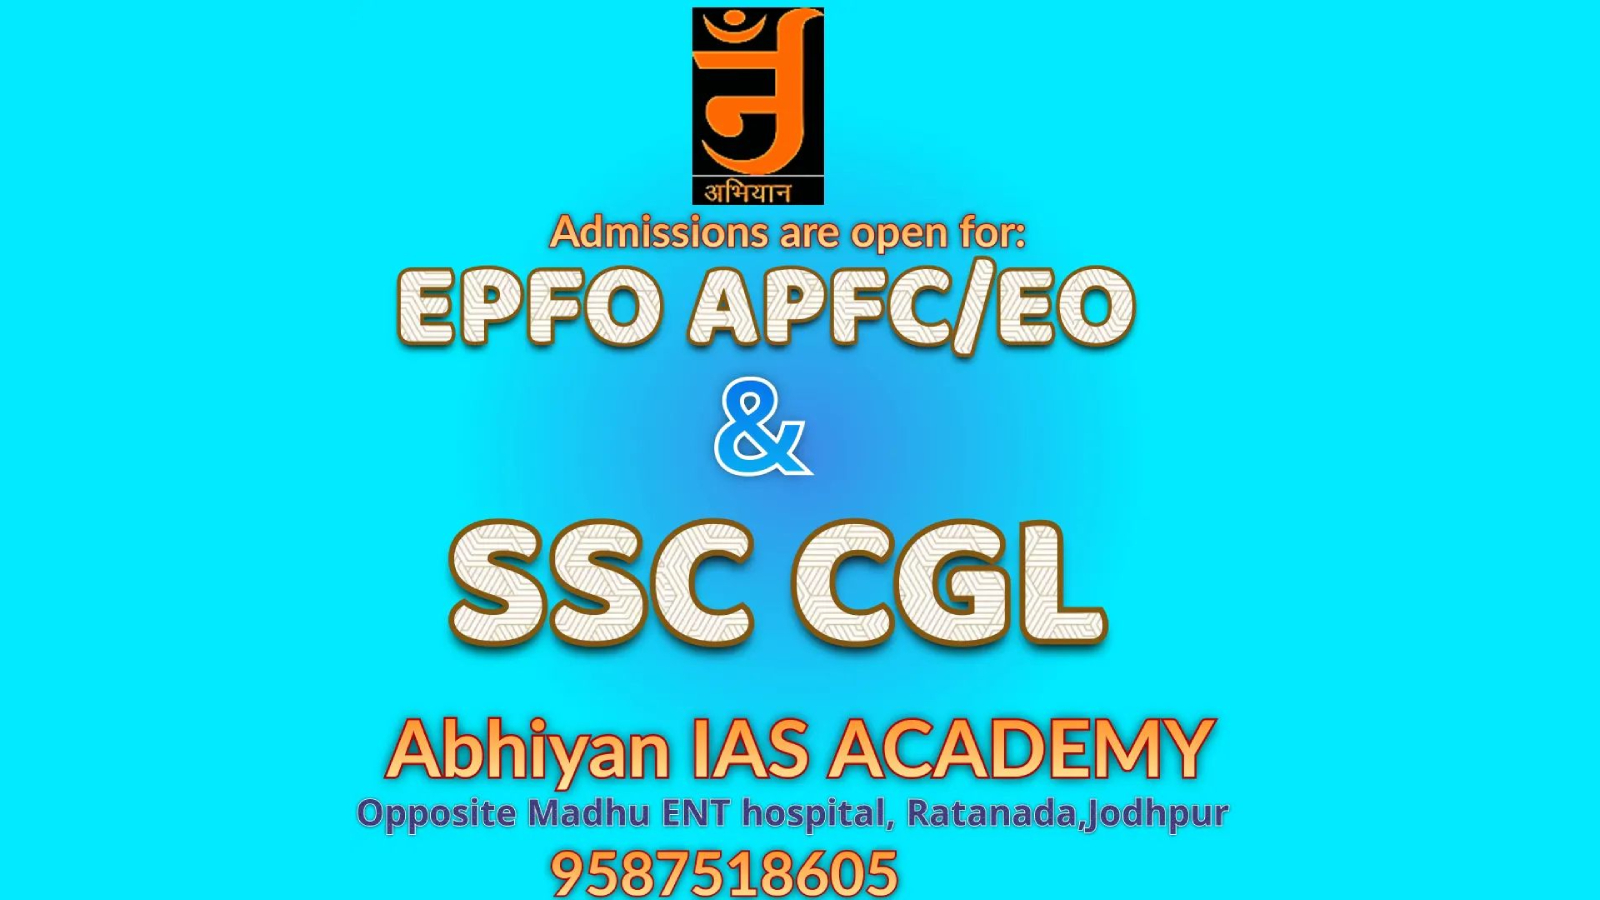 Abhiyan IAS Academy Jodhpur Hero Slider - 2